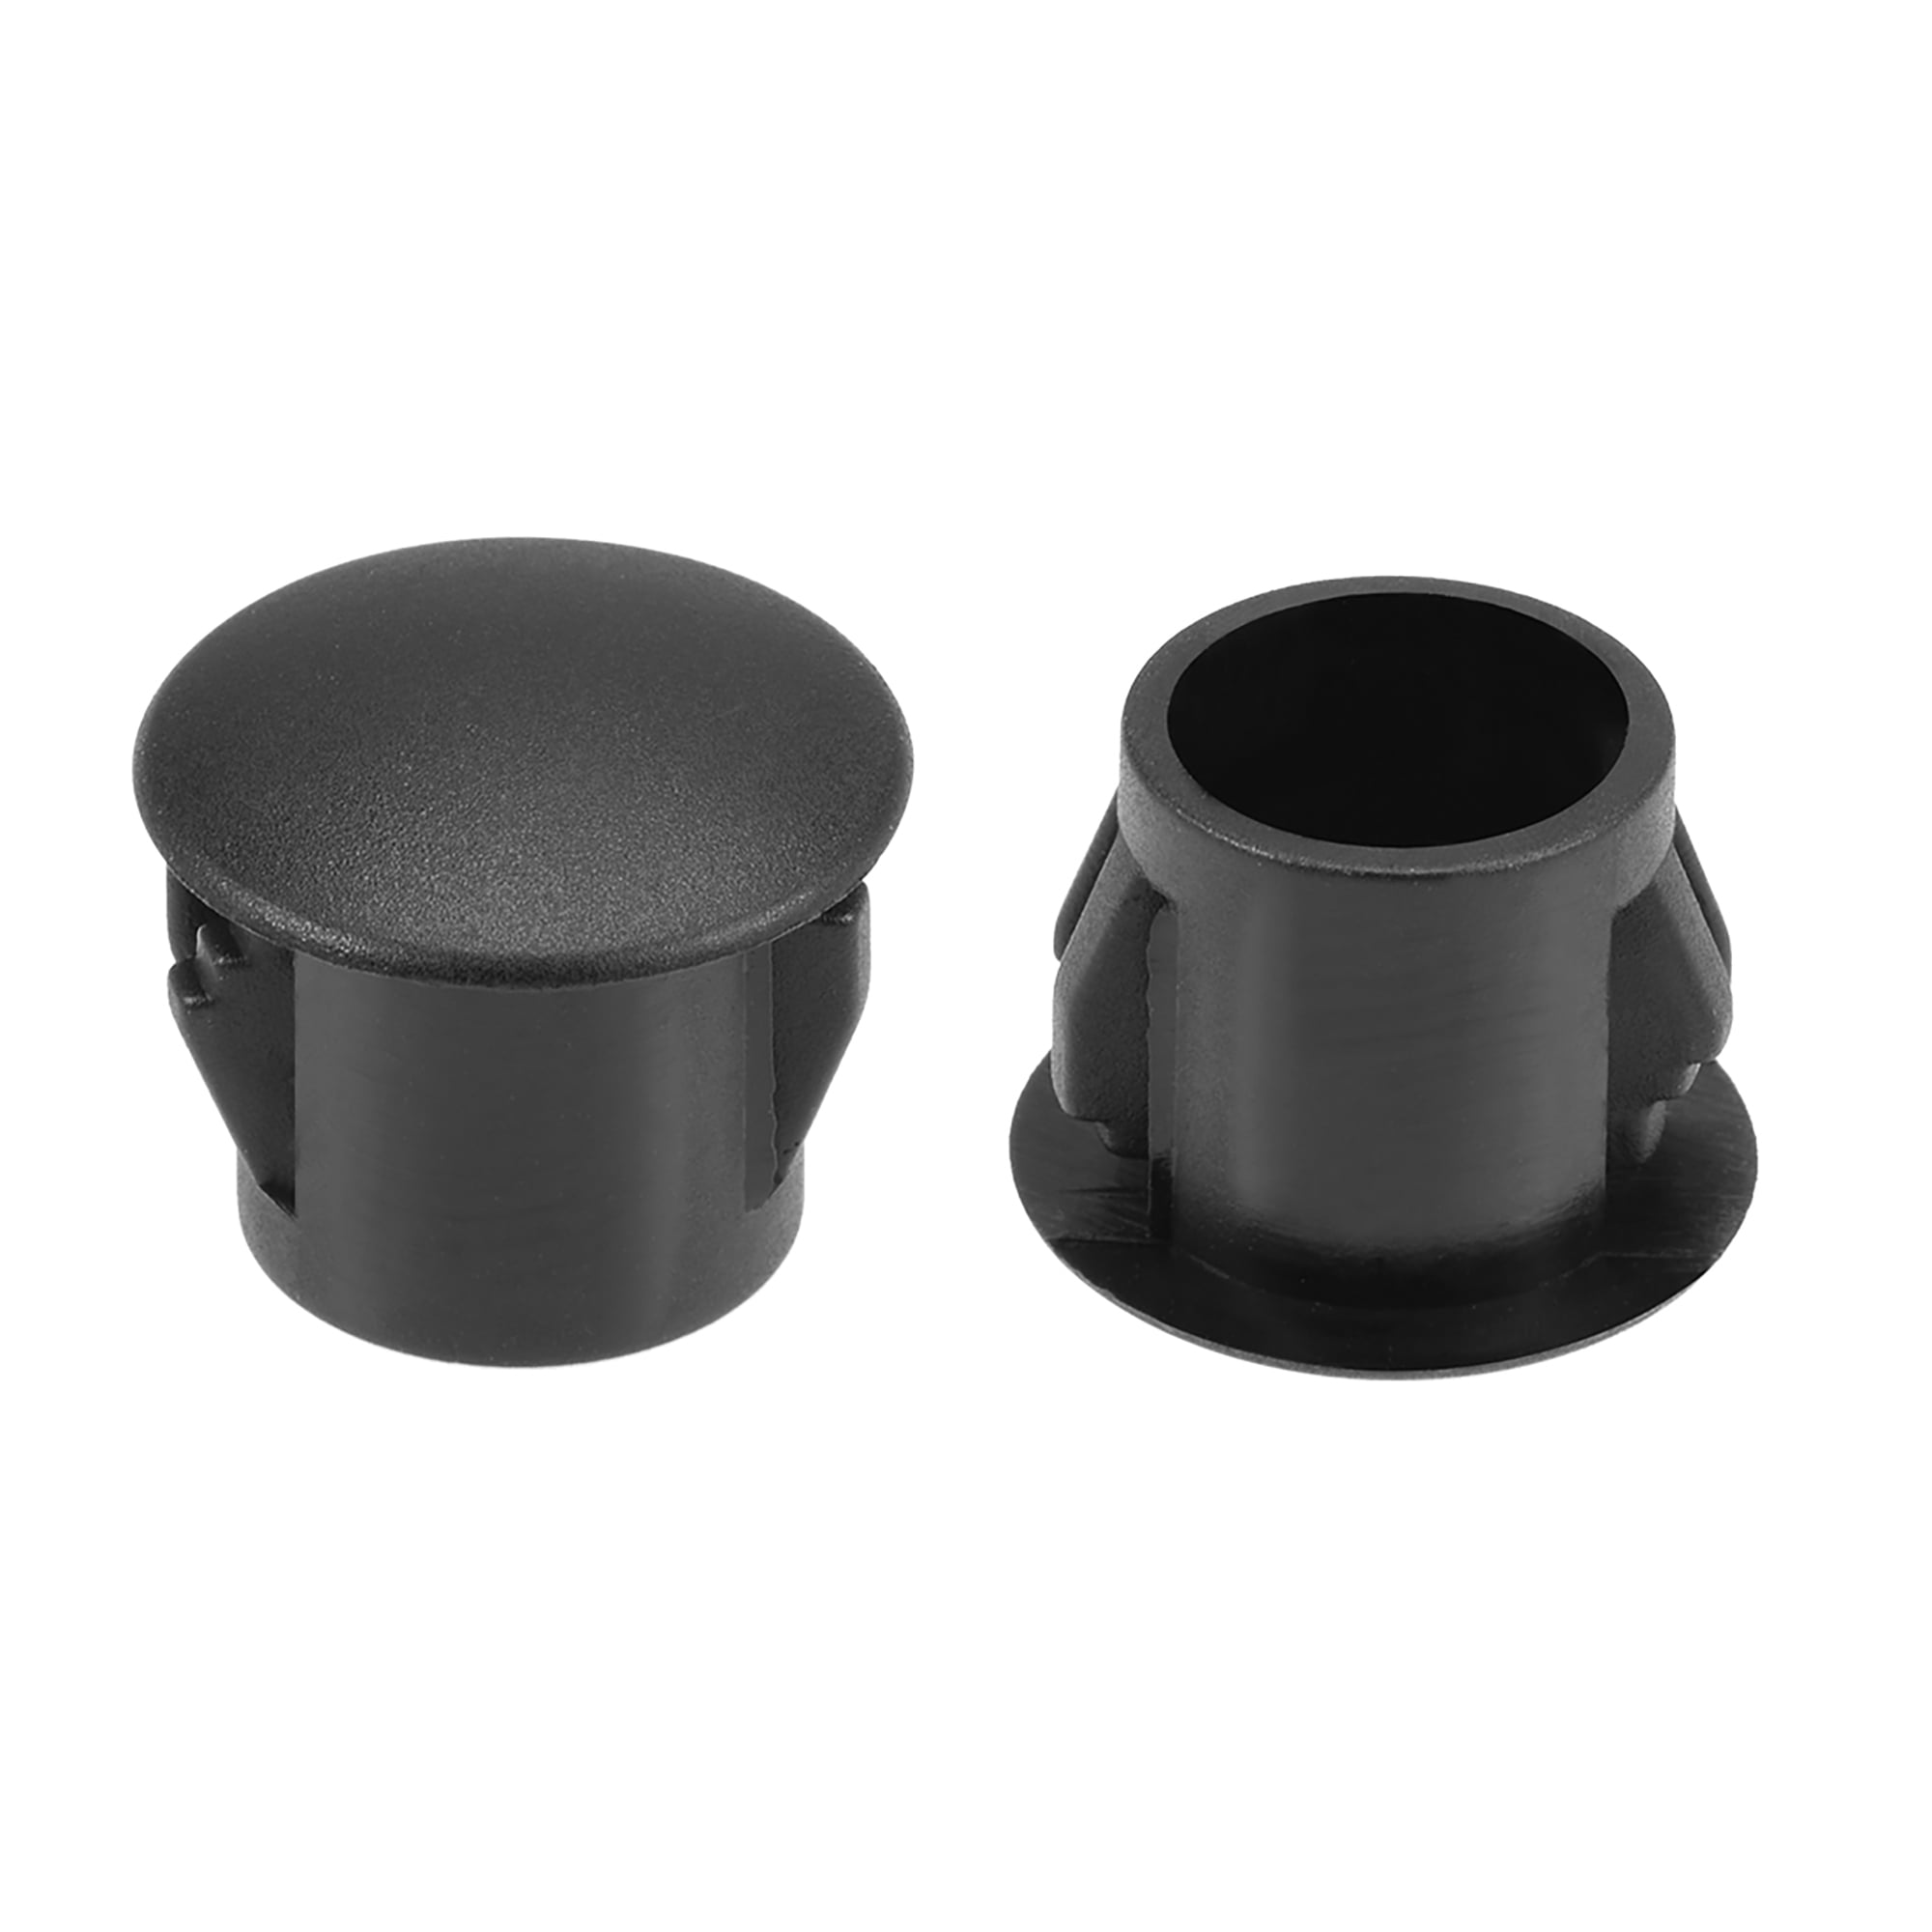 25 Pcs 22mm Snap in Locking Hole Tube Flush Type Panel Plugs Hole Plugs Black 